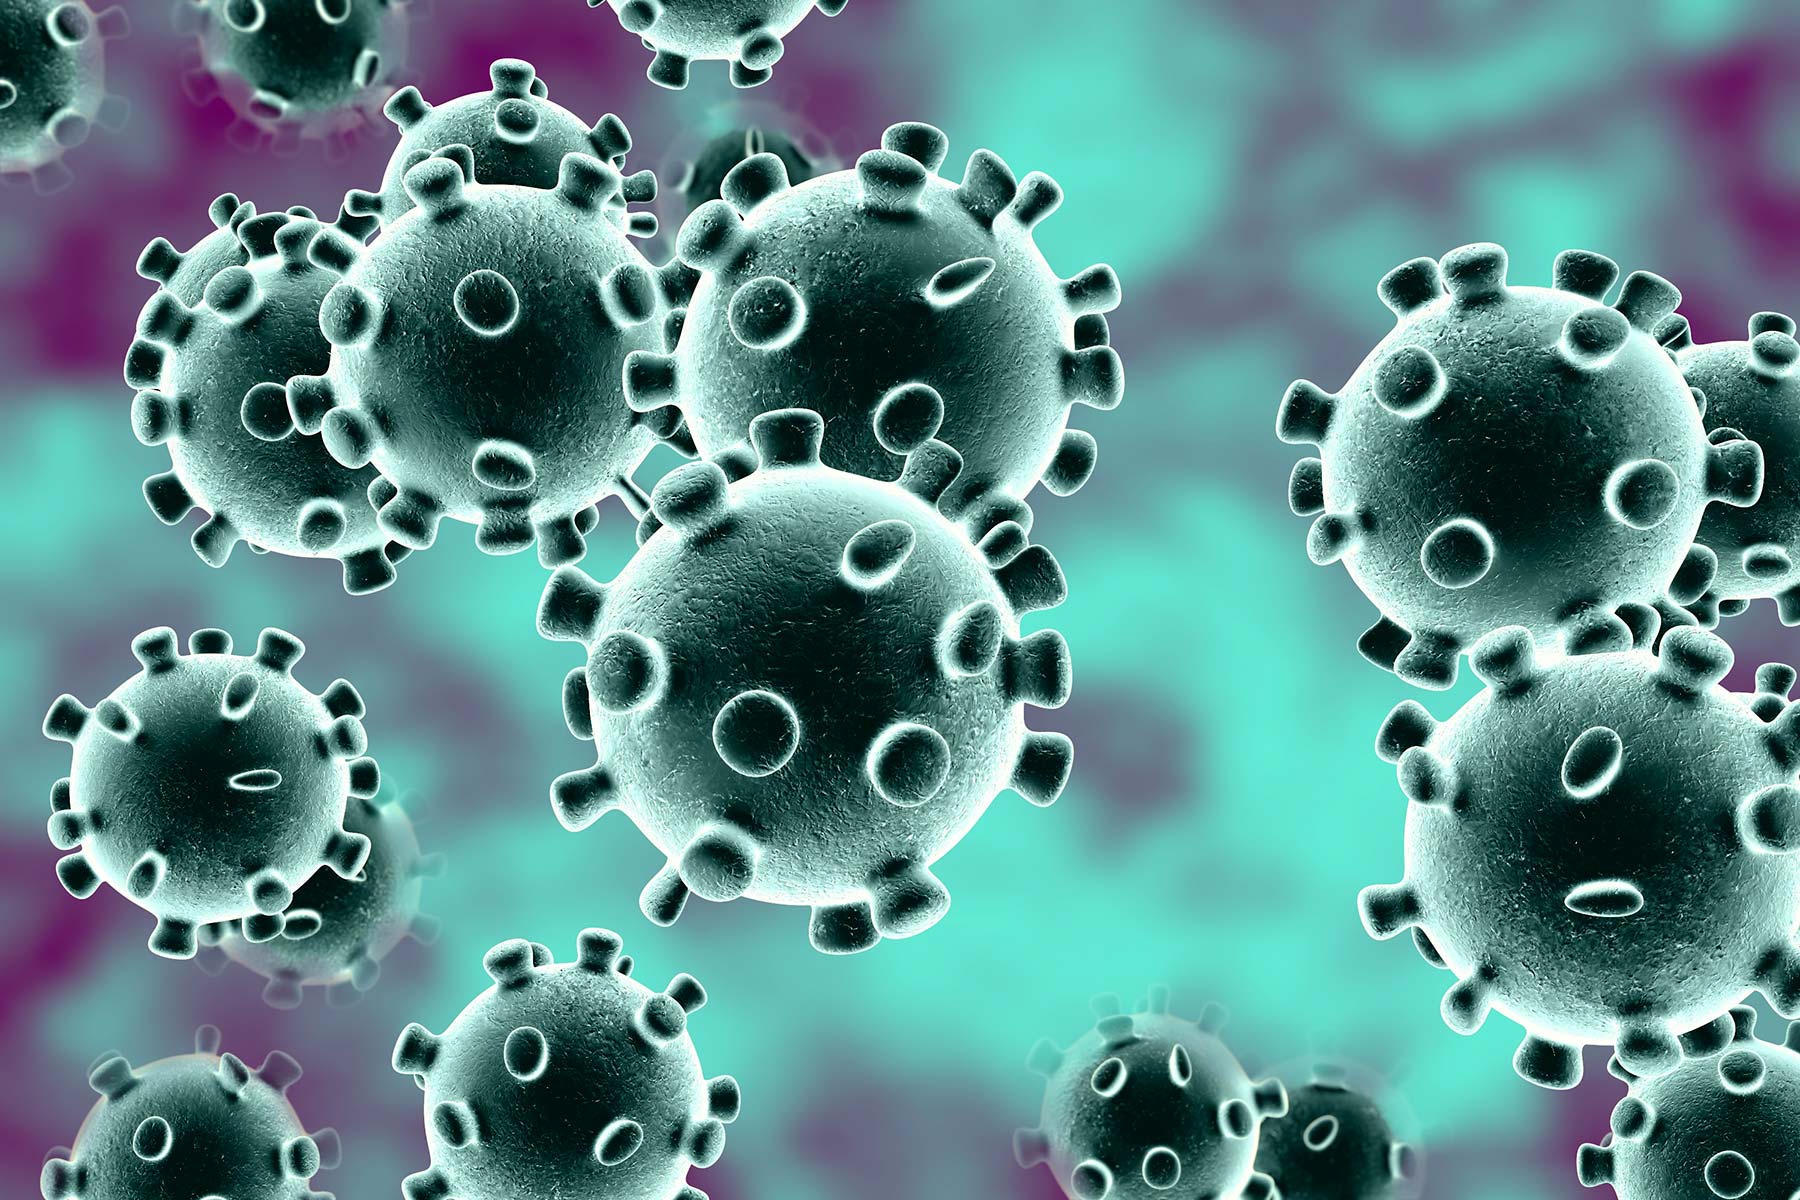 Cum elimini riscurile de infectare cu coronavirus